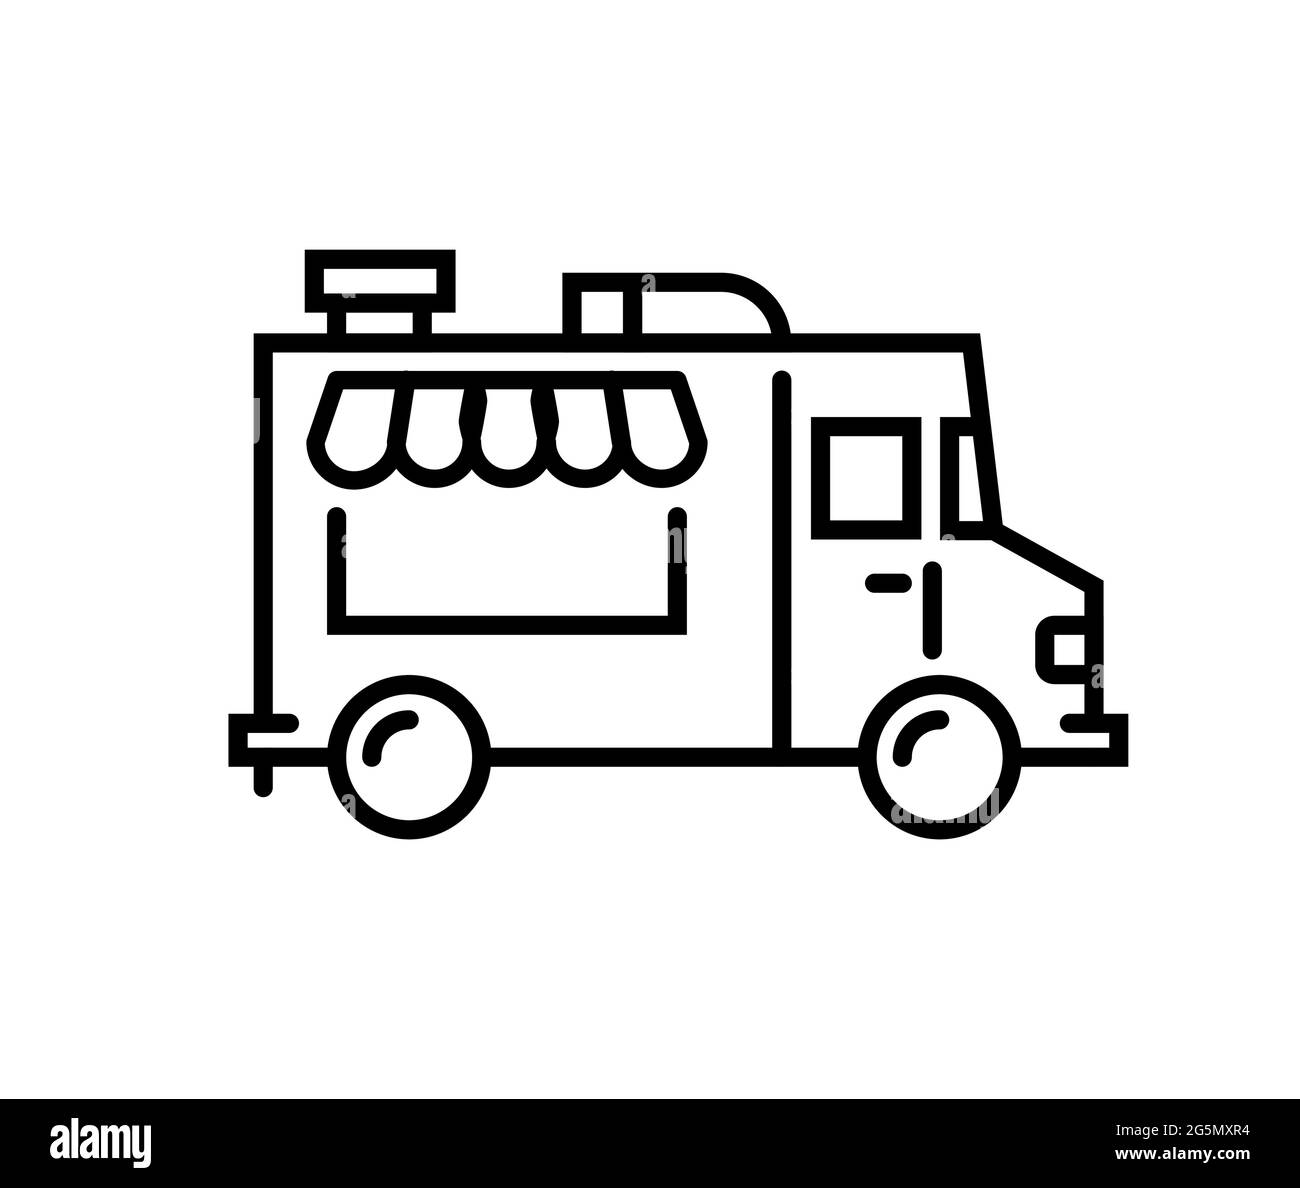 Food truck logo line icon. Vector foodtruck kitchen street van design icon Stock Vector